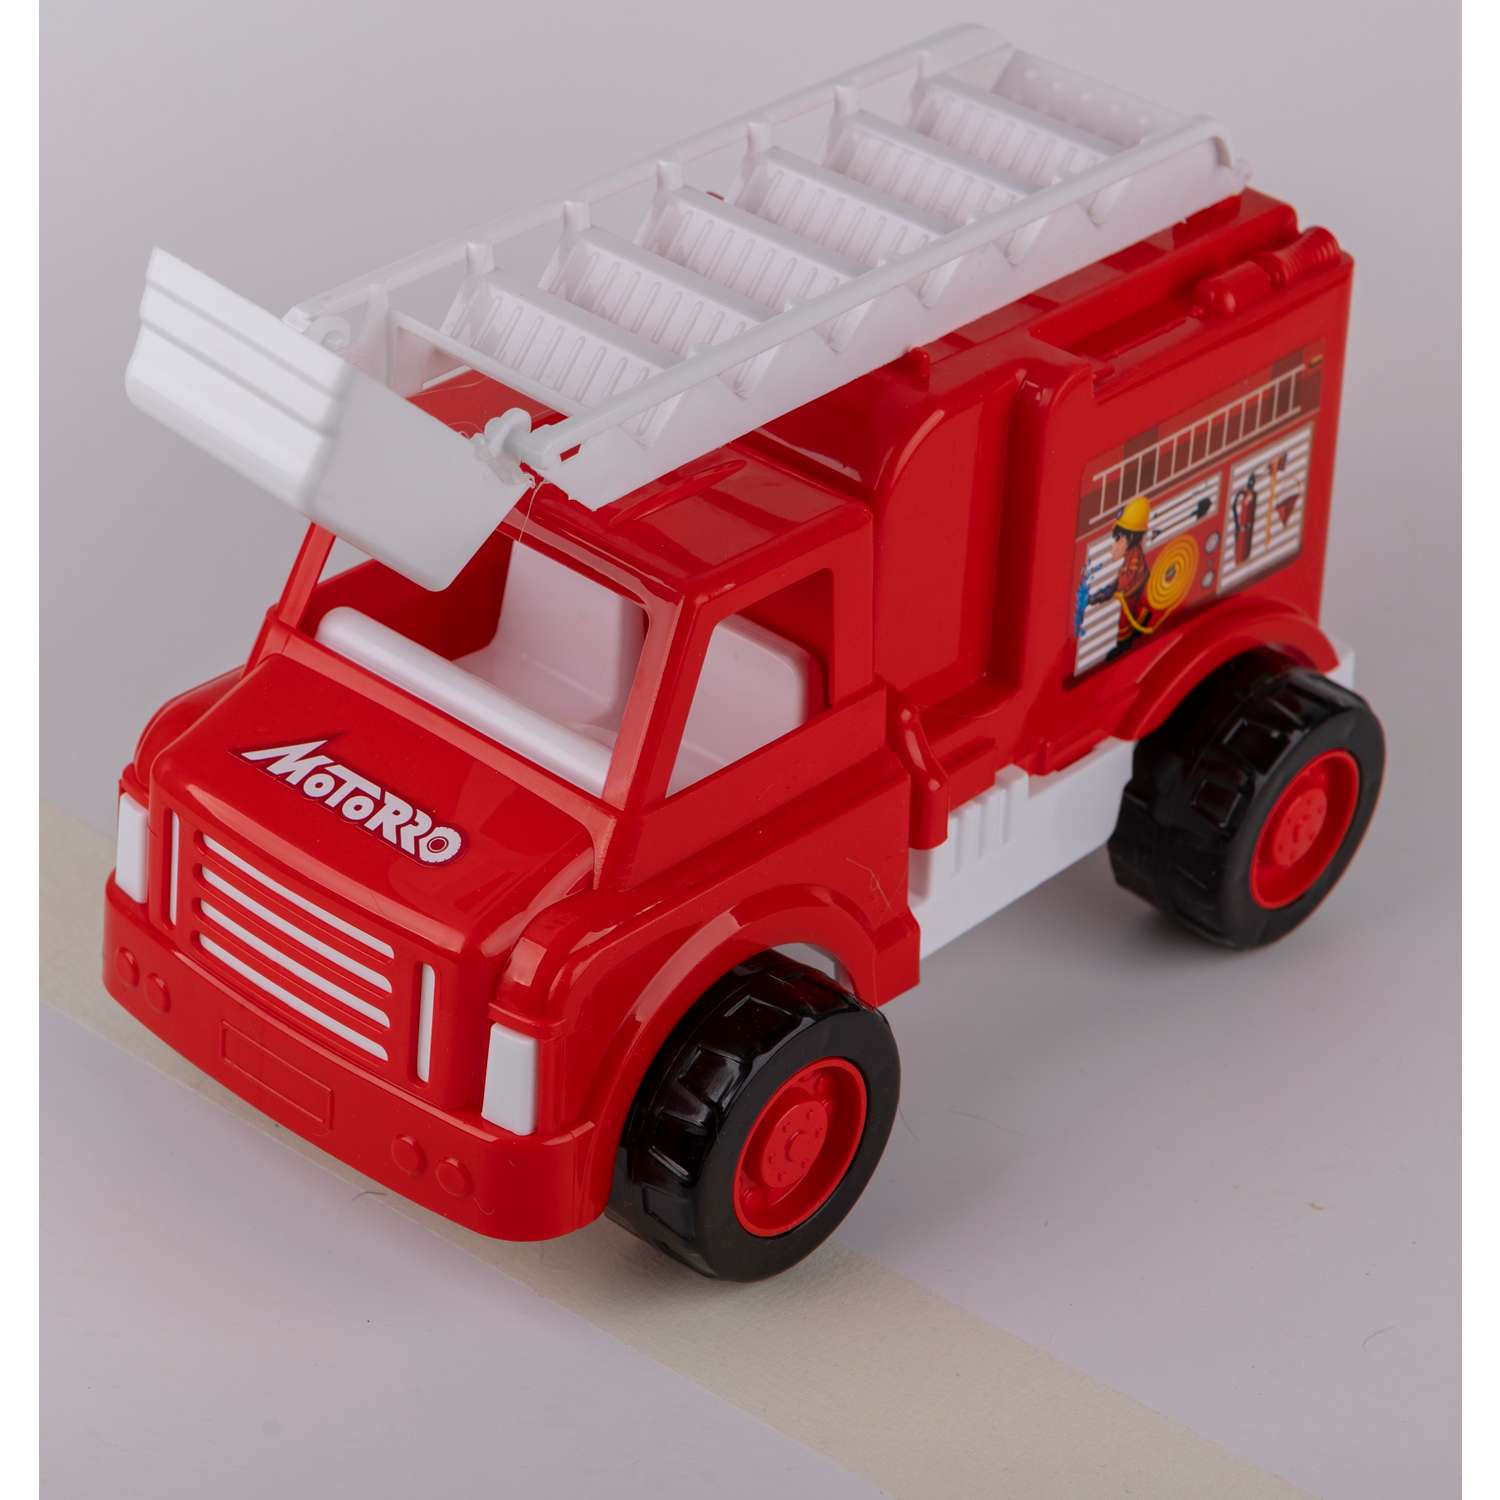 Пластиковая машинка Motorro Пожарный транспорт размер 25 см HL-17503 - фото 5